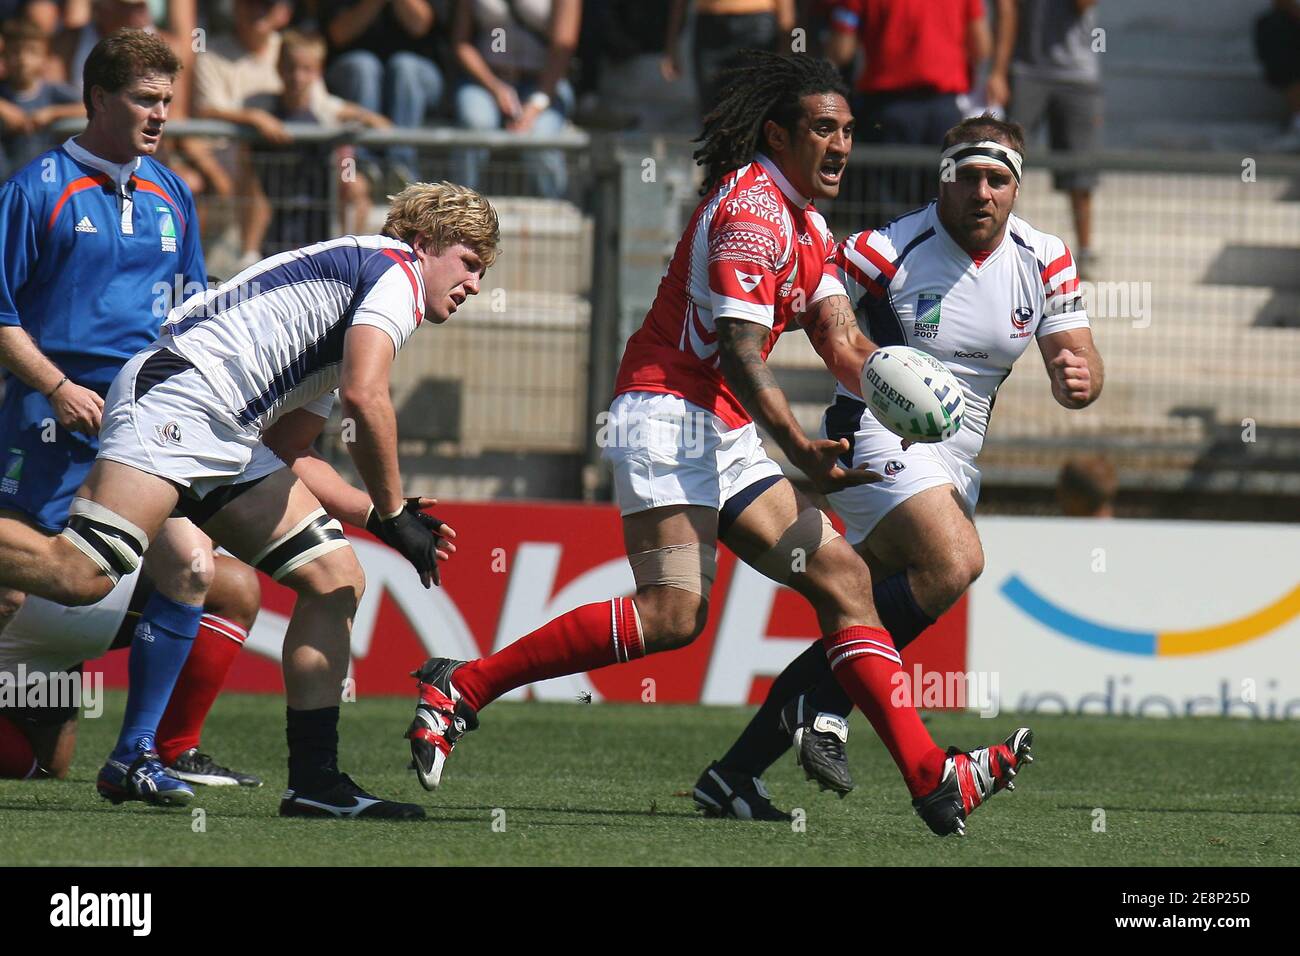 Le Hale Pole des Tonga lors du match de rugby de la coupe du monde 2007,  Tonga contre USA au stade Mosson de Montpellier, France, le 12 septembre  2007. Tonga a gagné